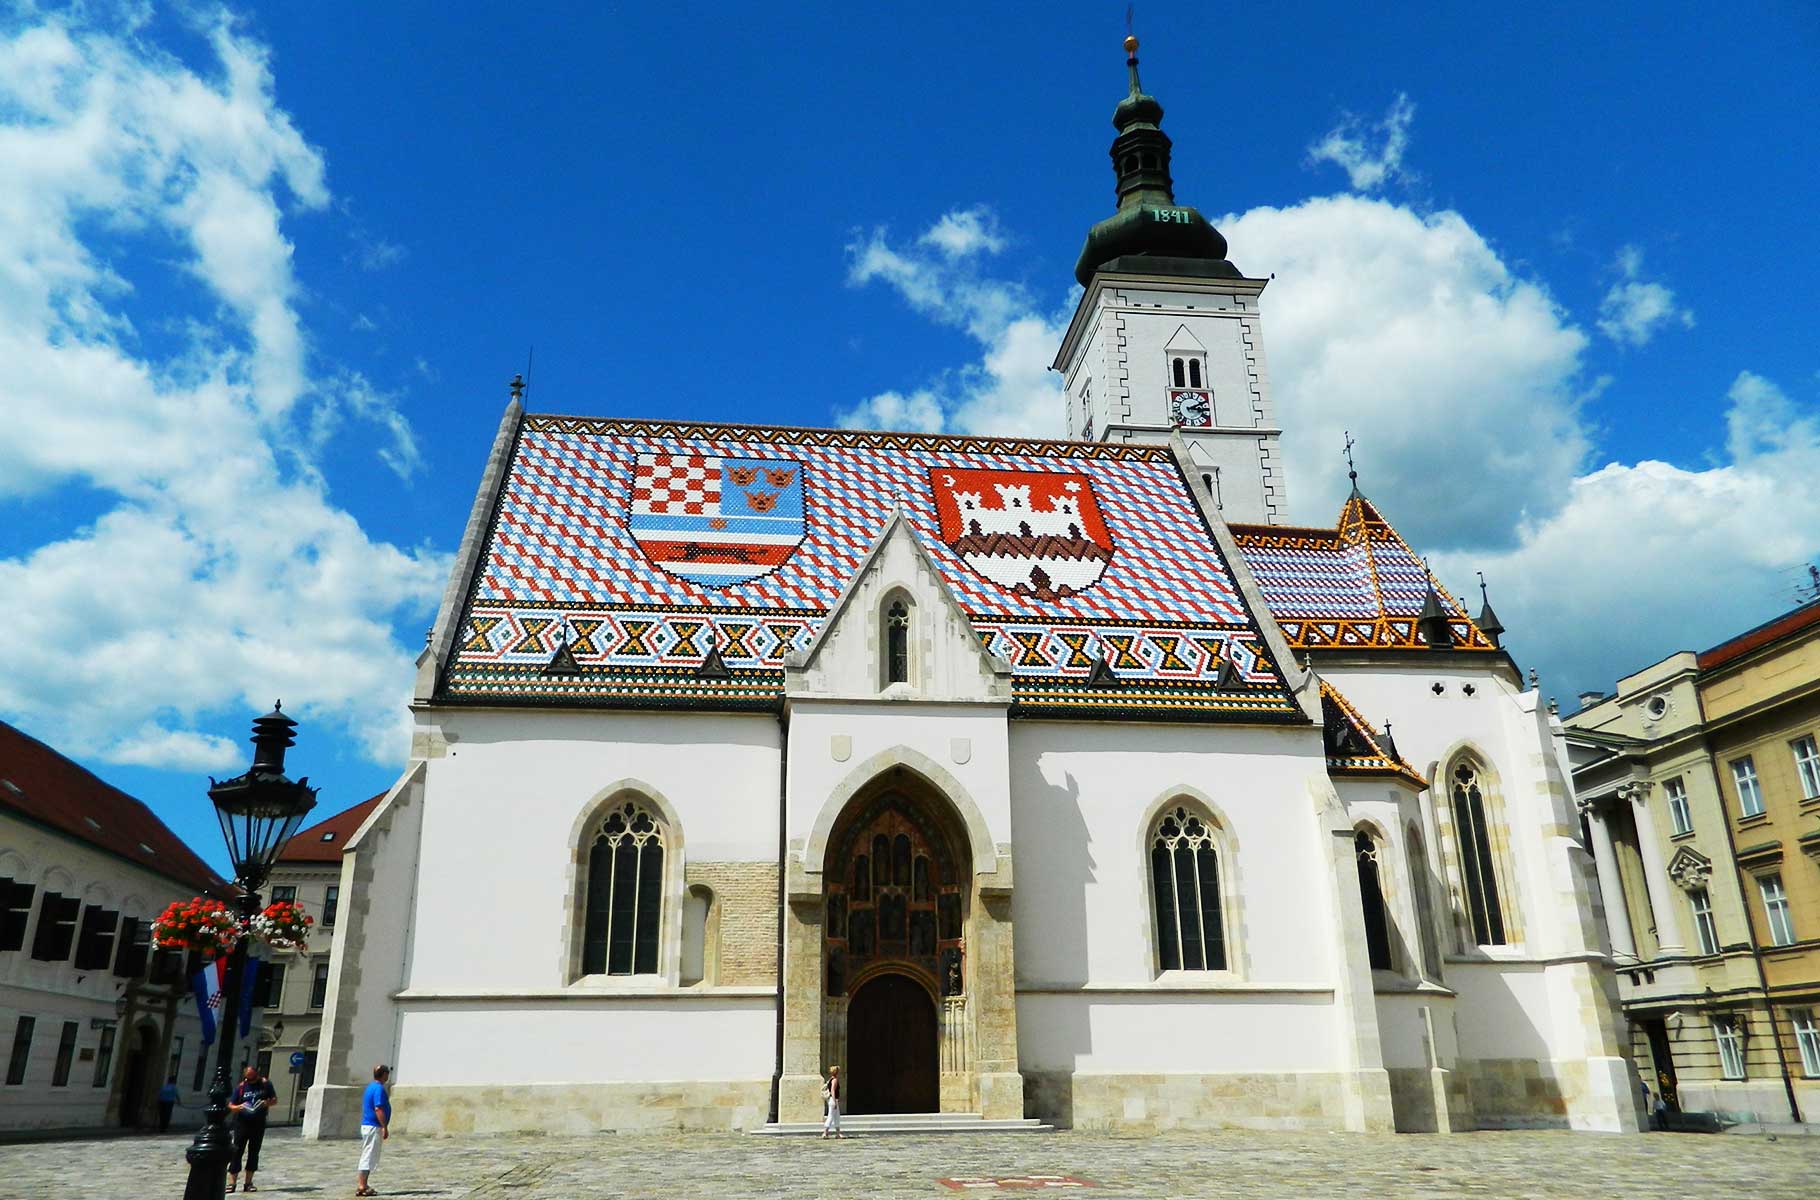 Roteiro de viagem pela Croácia: 8 dias de Dubrovnik a Zagreb